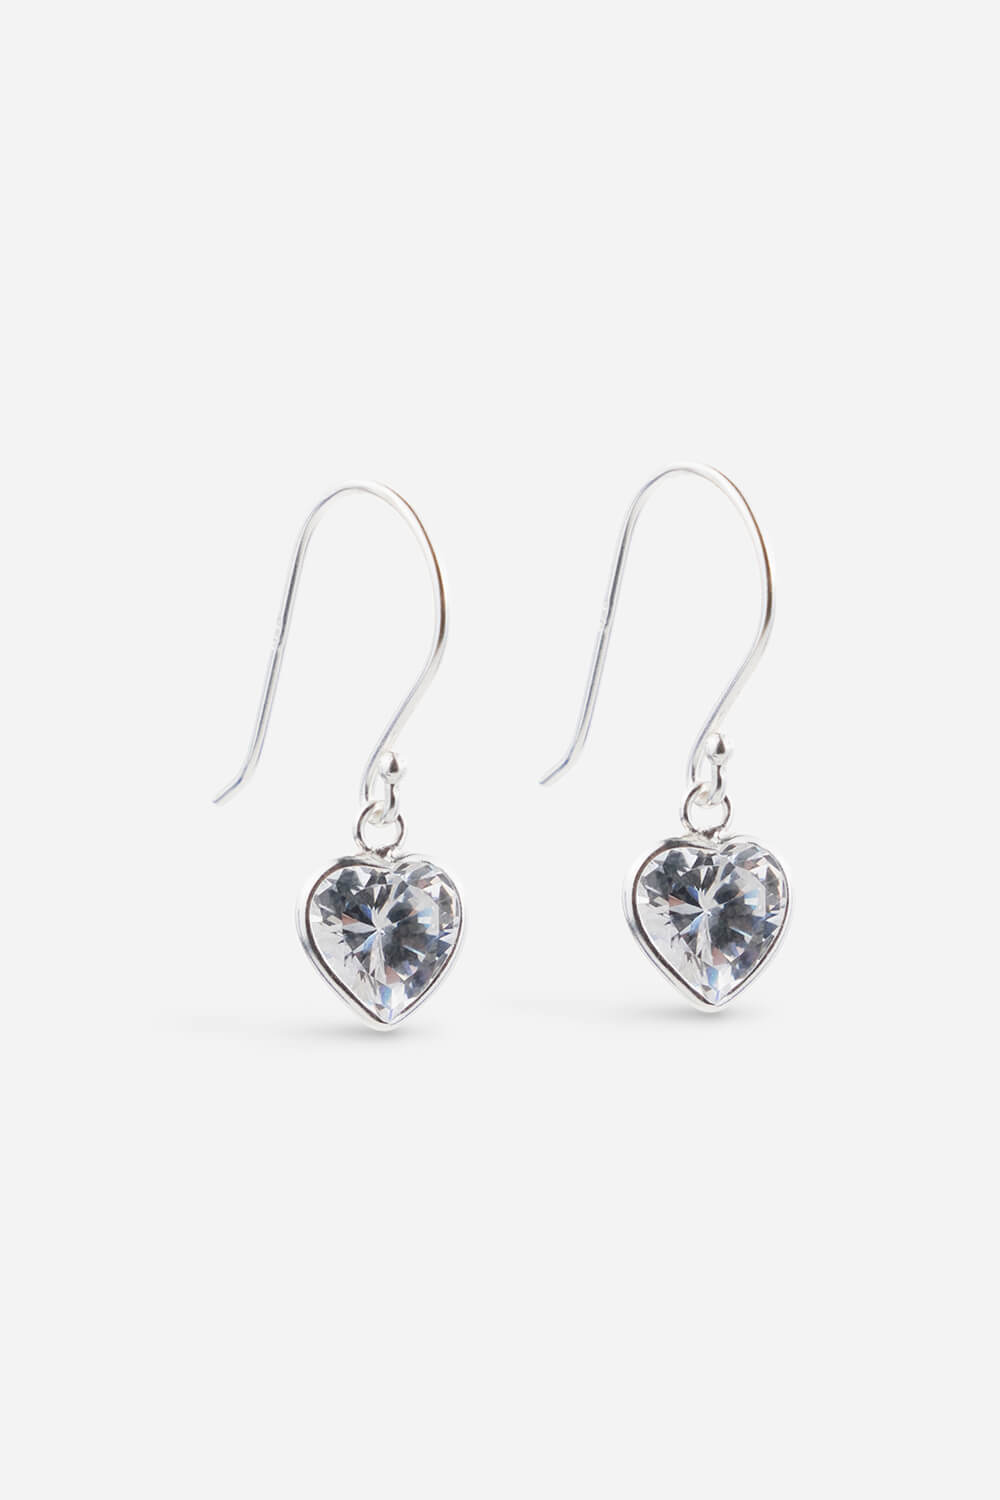 8mm Sterling Silver Cubic Zirconia Heart Drop Earrings